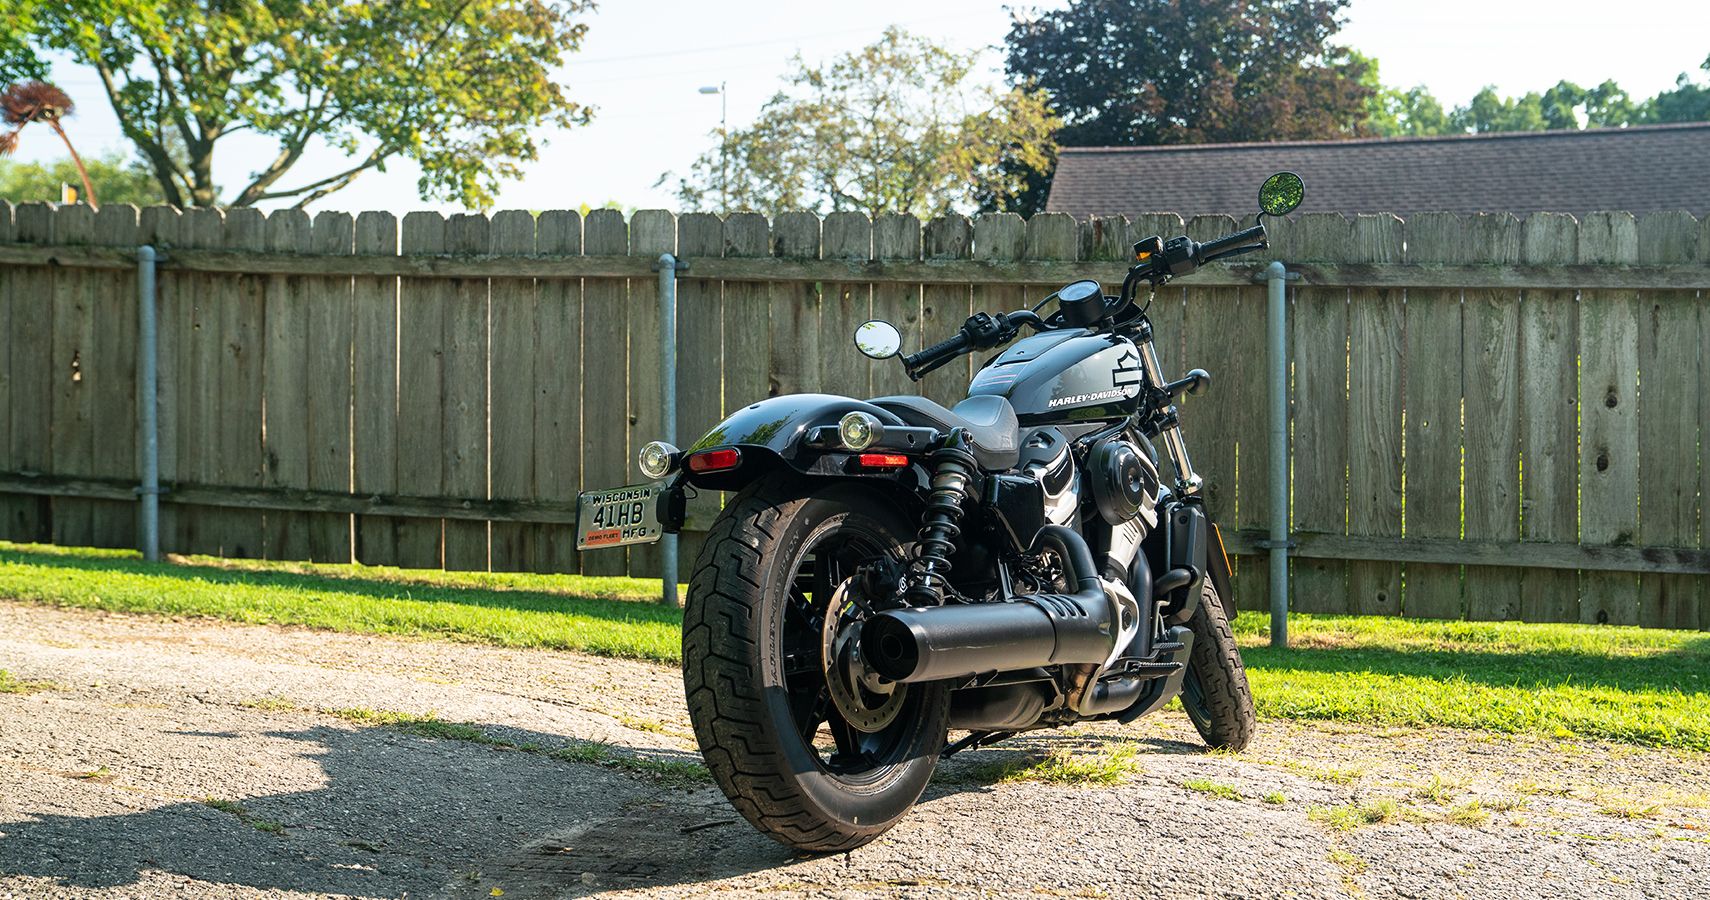 2022 Harley-Davidson Nightster rear